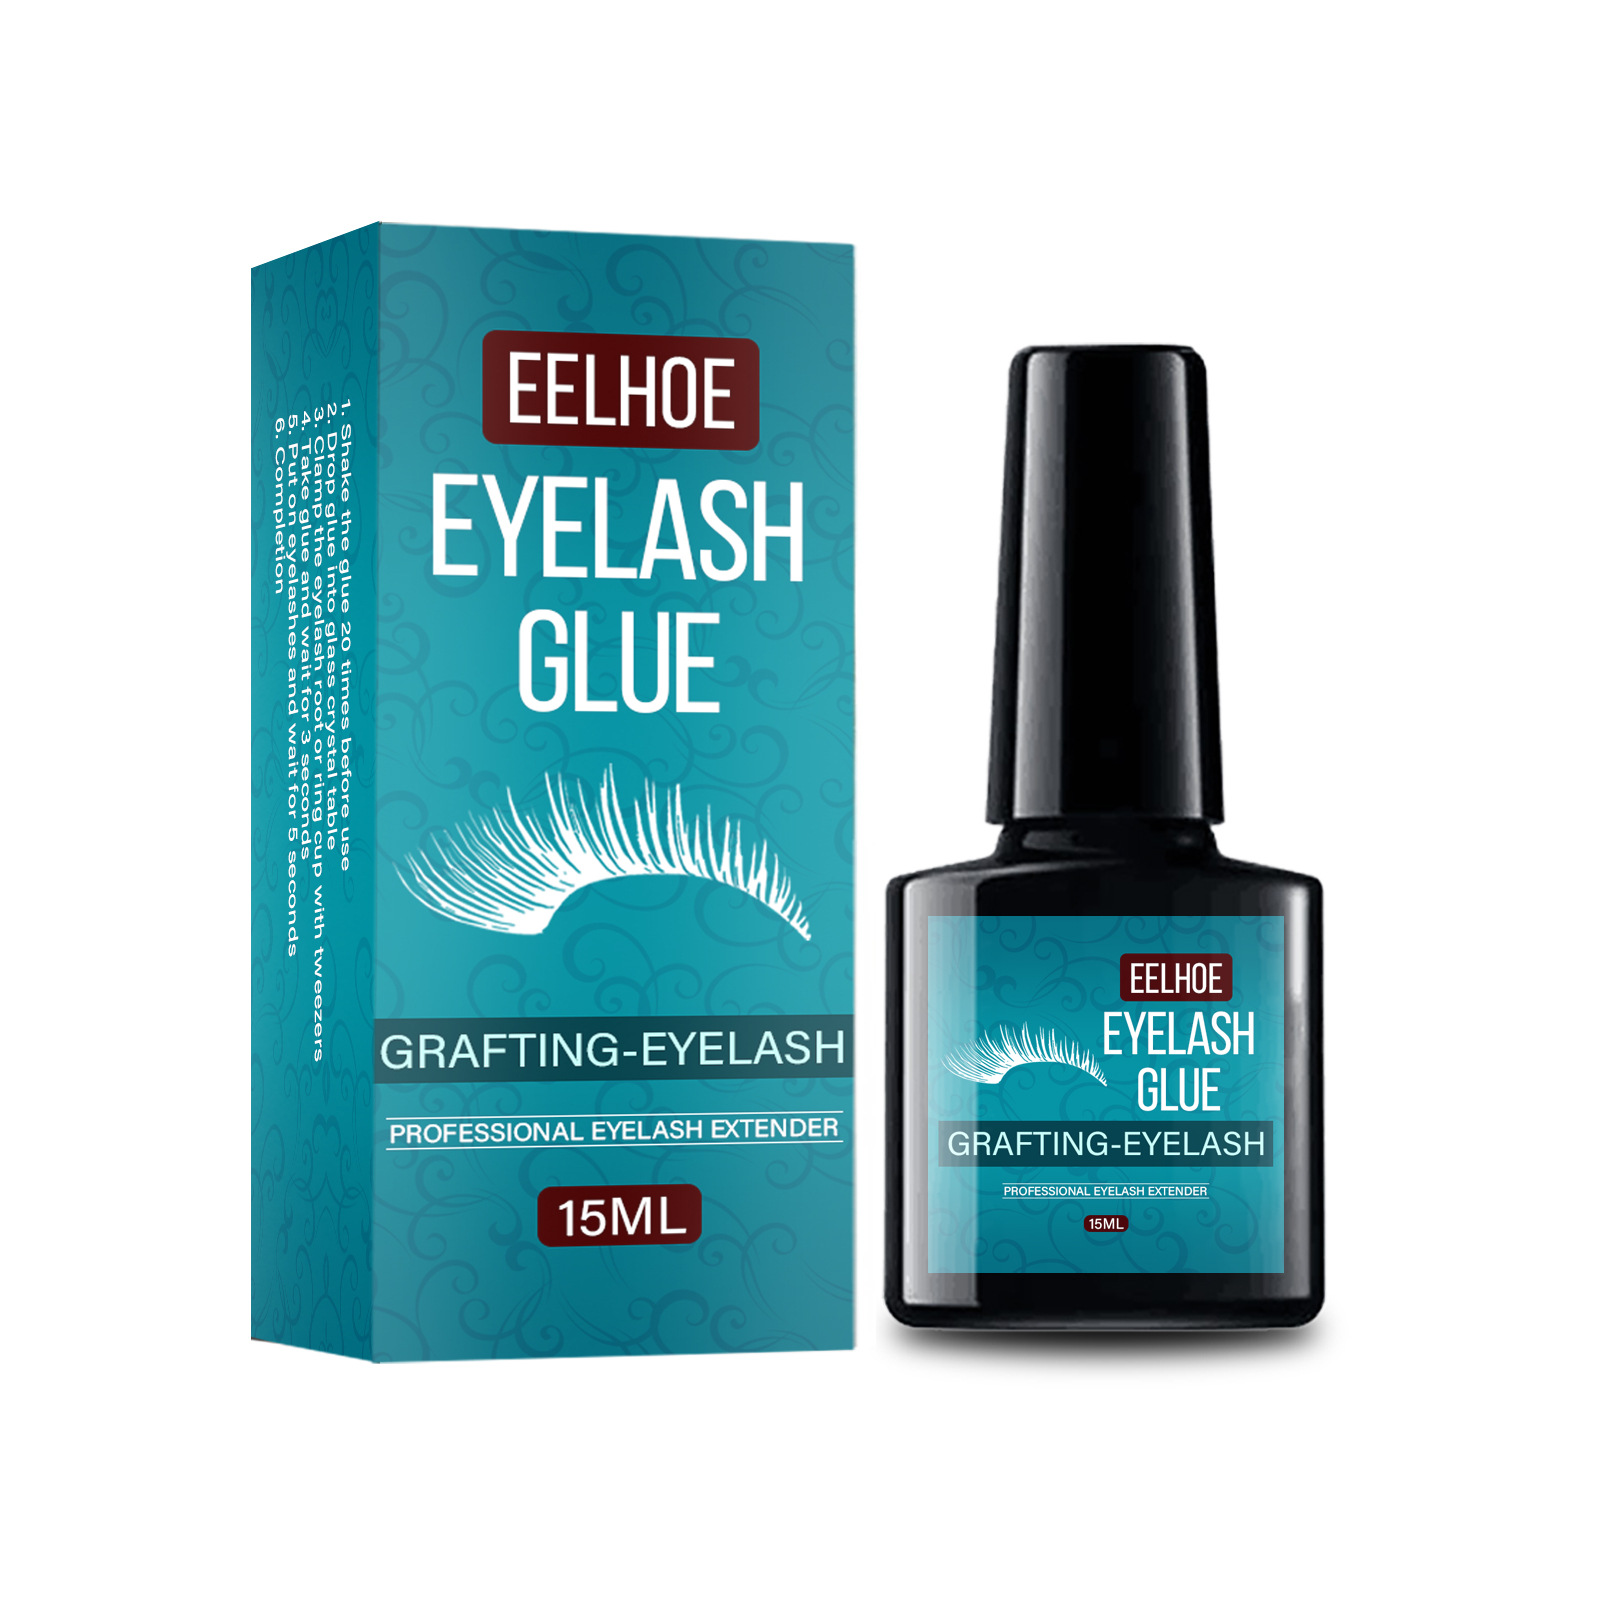 Eyelash Glue Grafting Eye Lash Glue Eyelash Glue Plant False Eyelashes